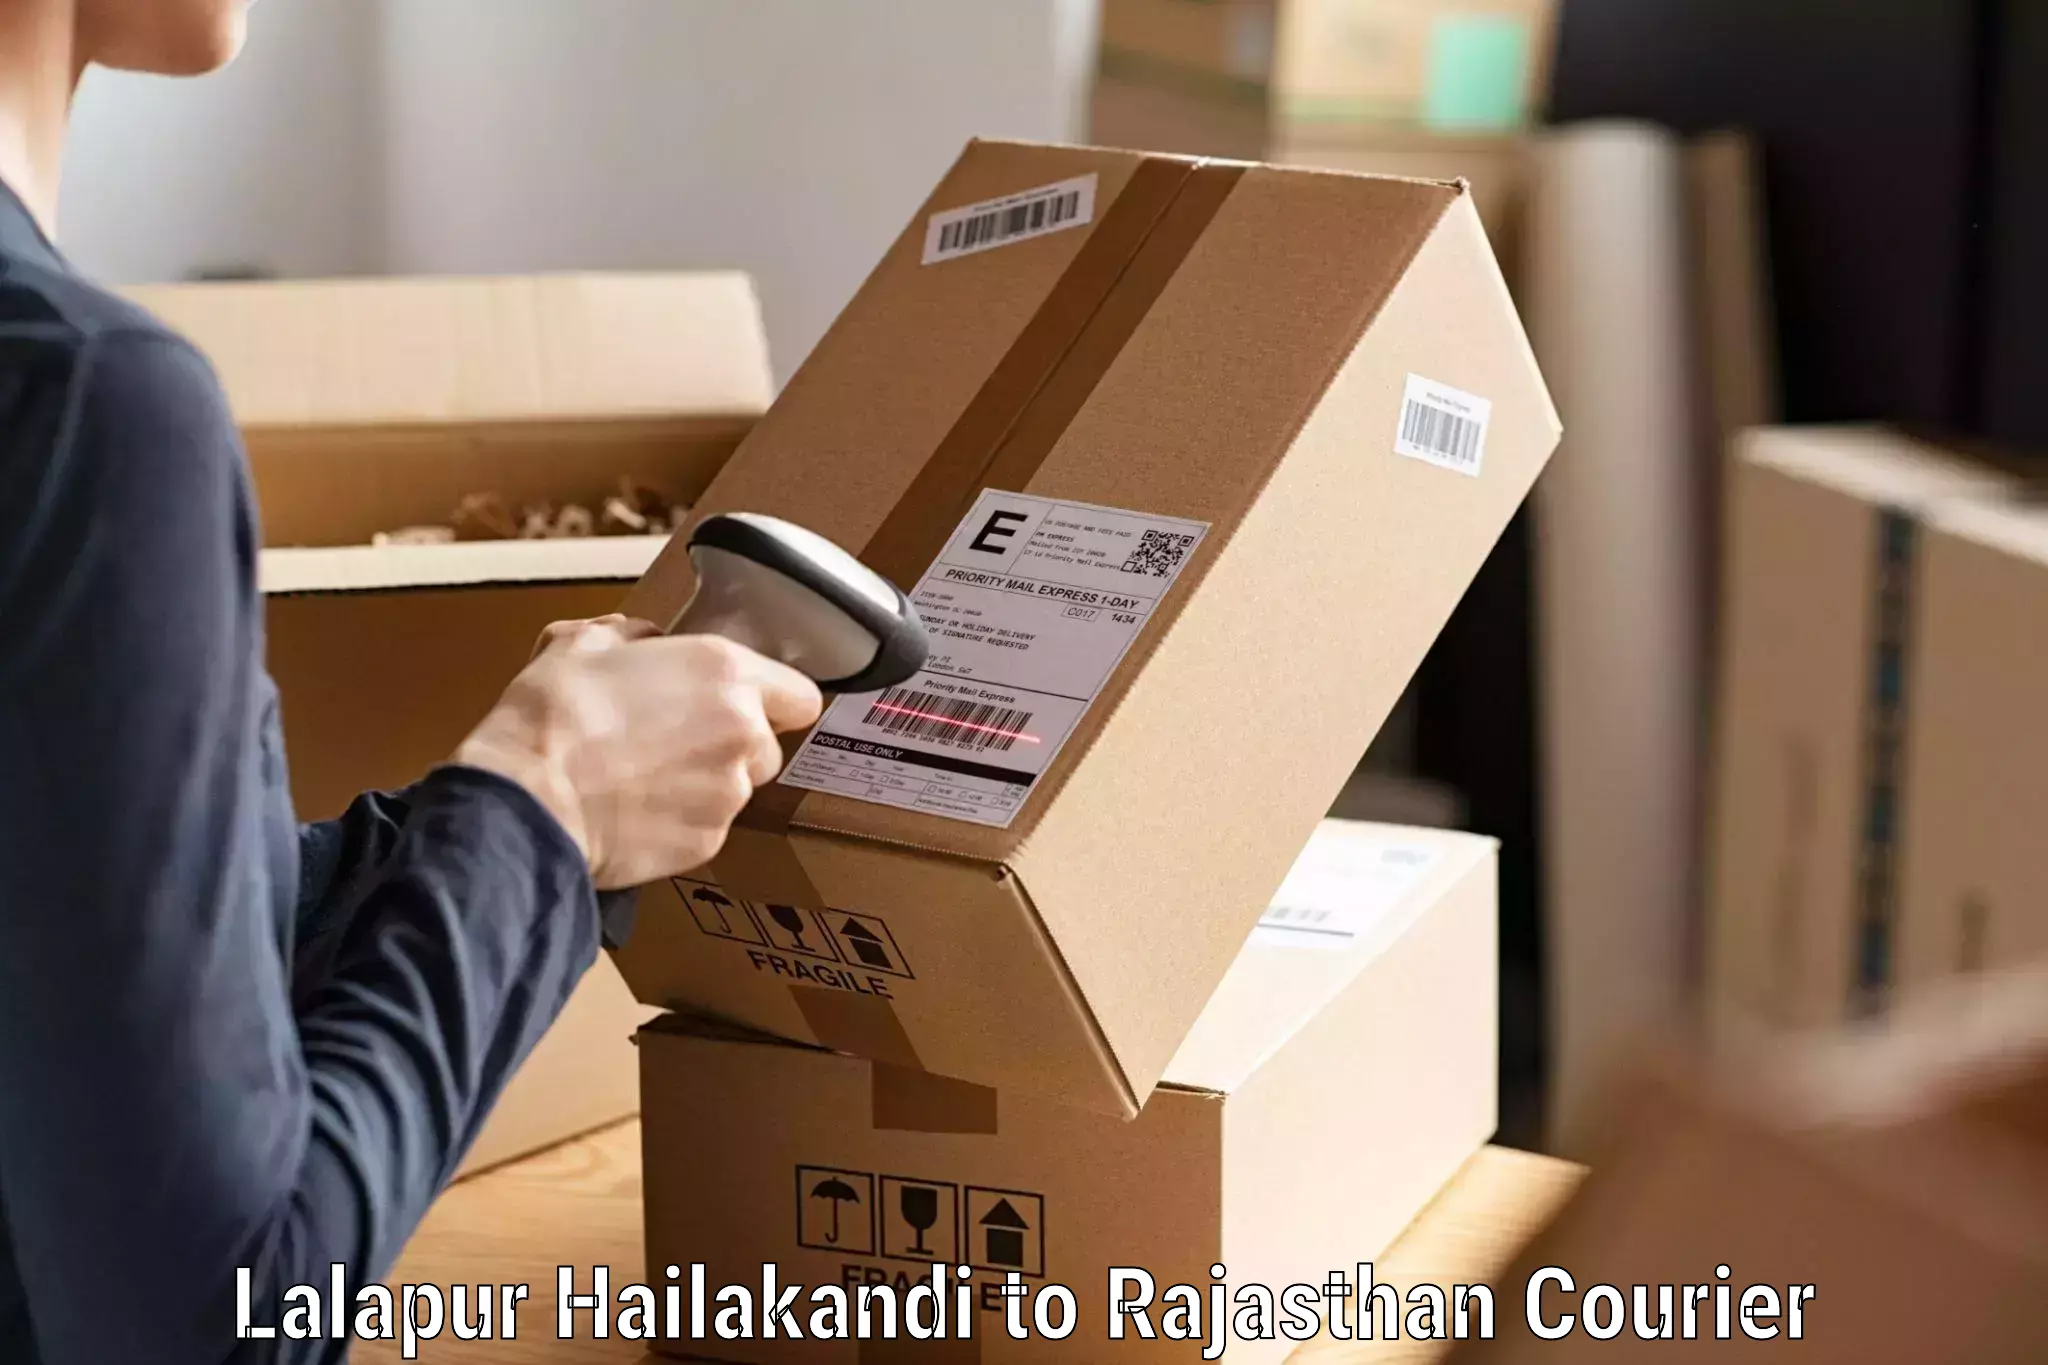 Holiday shipping services Lalapur Hailakandi to Rajasthan